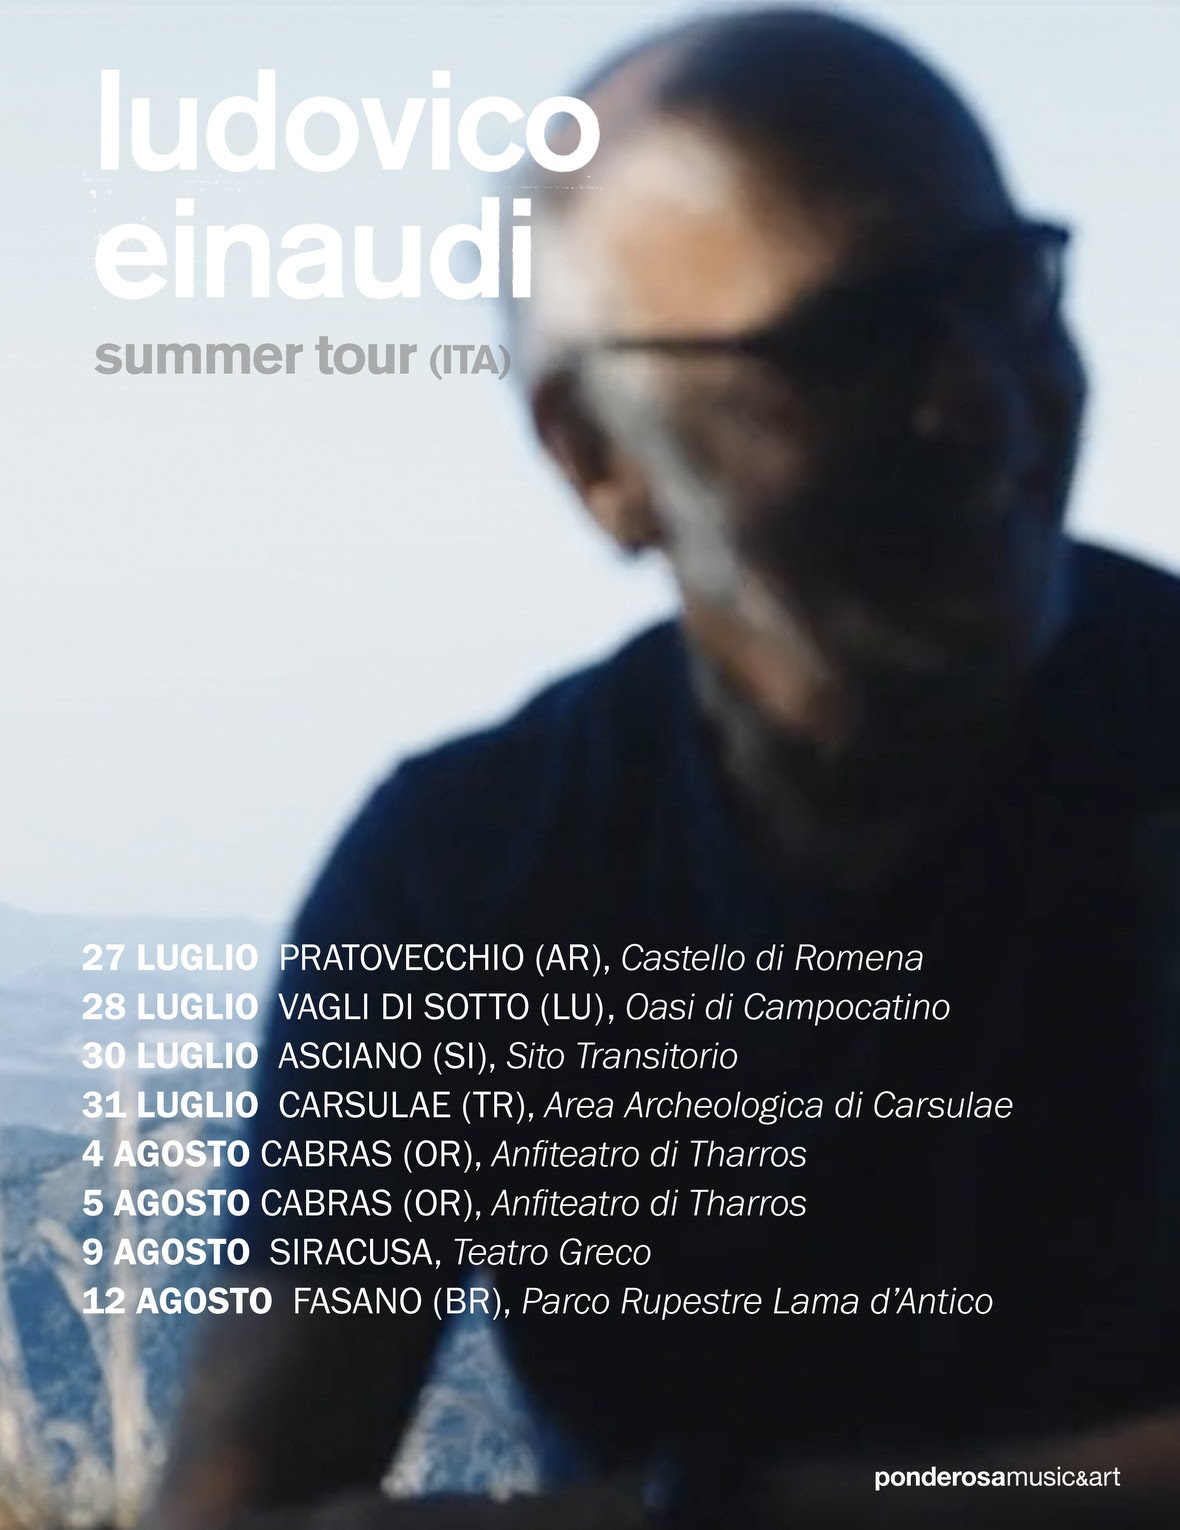 Ludovico Einaudi, ecco le date dell’Underwater summer tour 2022